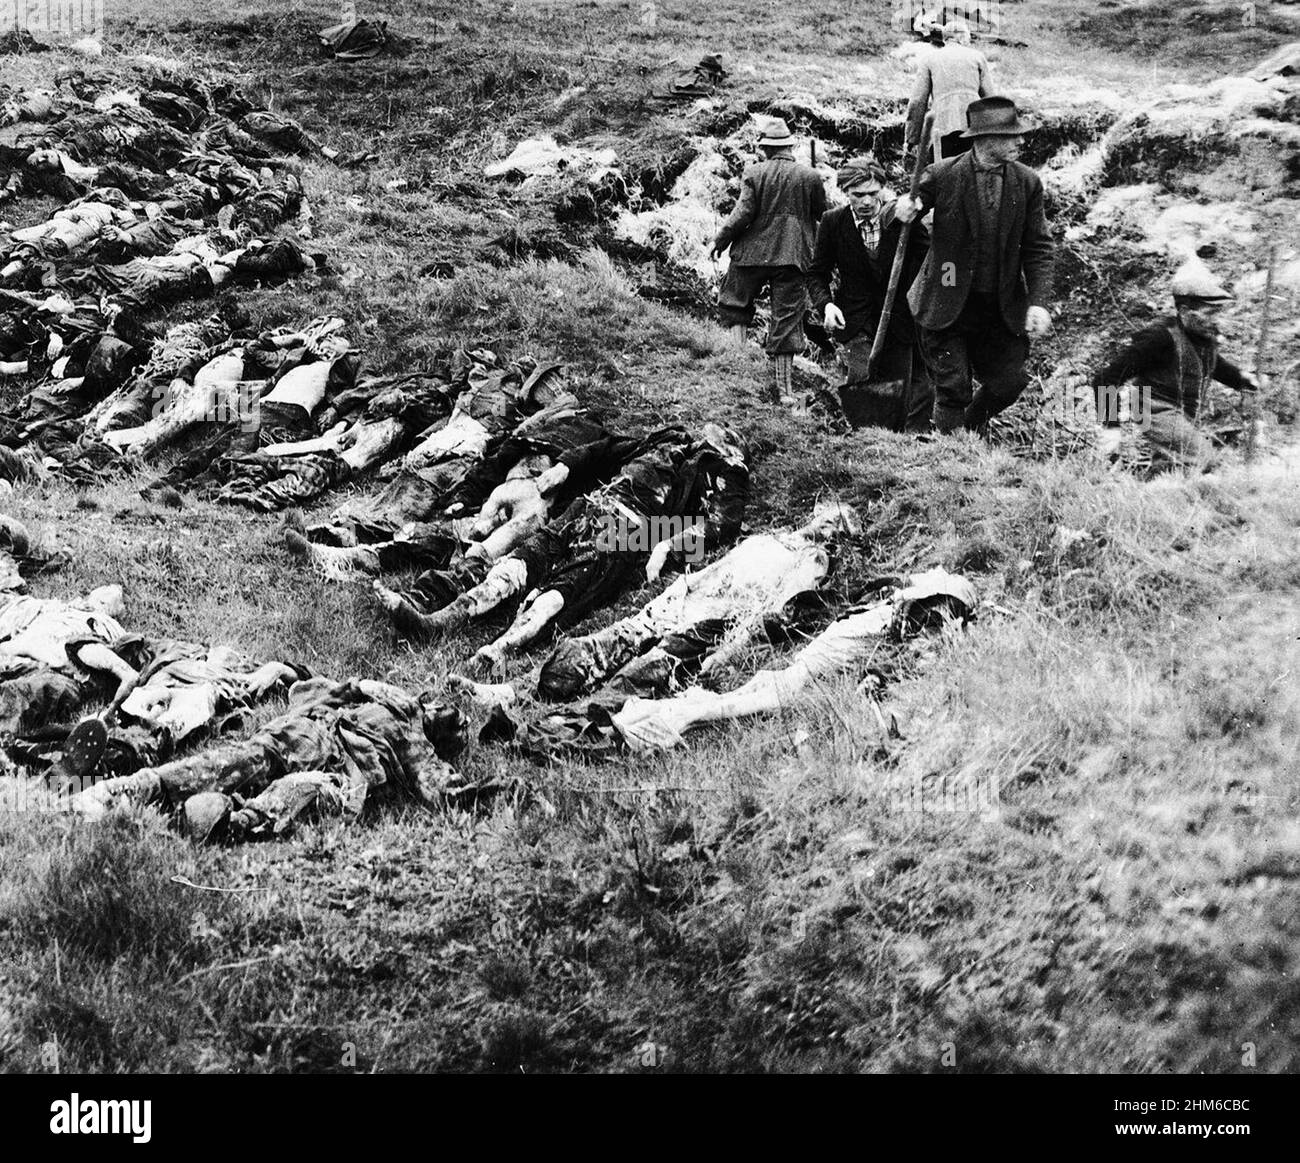 Des civils allemands exhument la tombe de masse à Schwarzenfeld - le 20 avril 1945, environ 750 des prisonniers juifs ont été bloqués à Schwarzenfeld après une autre attaque aérienne qui a désactivé la locomotive. Environ 140 cadavres ont été trouvés dans un champ voisin après la libération, bien qu'il soit difficile de savoir combien ont été tués dans le raid ou assassinés par les SS Banque D'Images